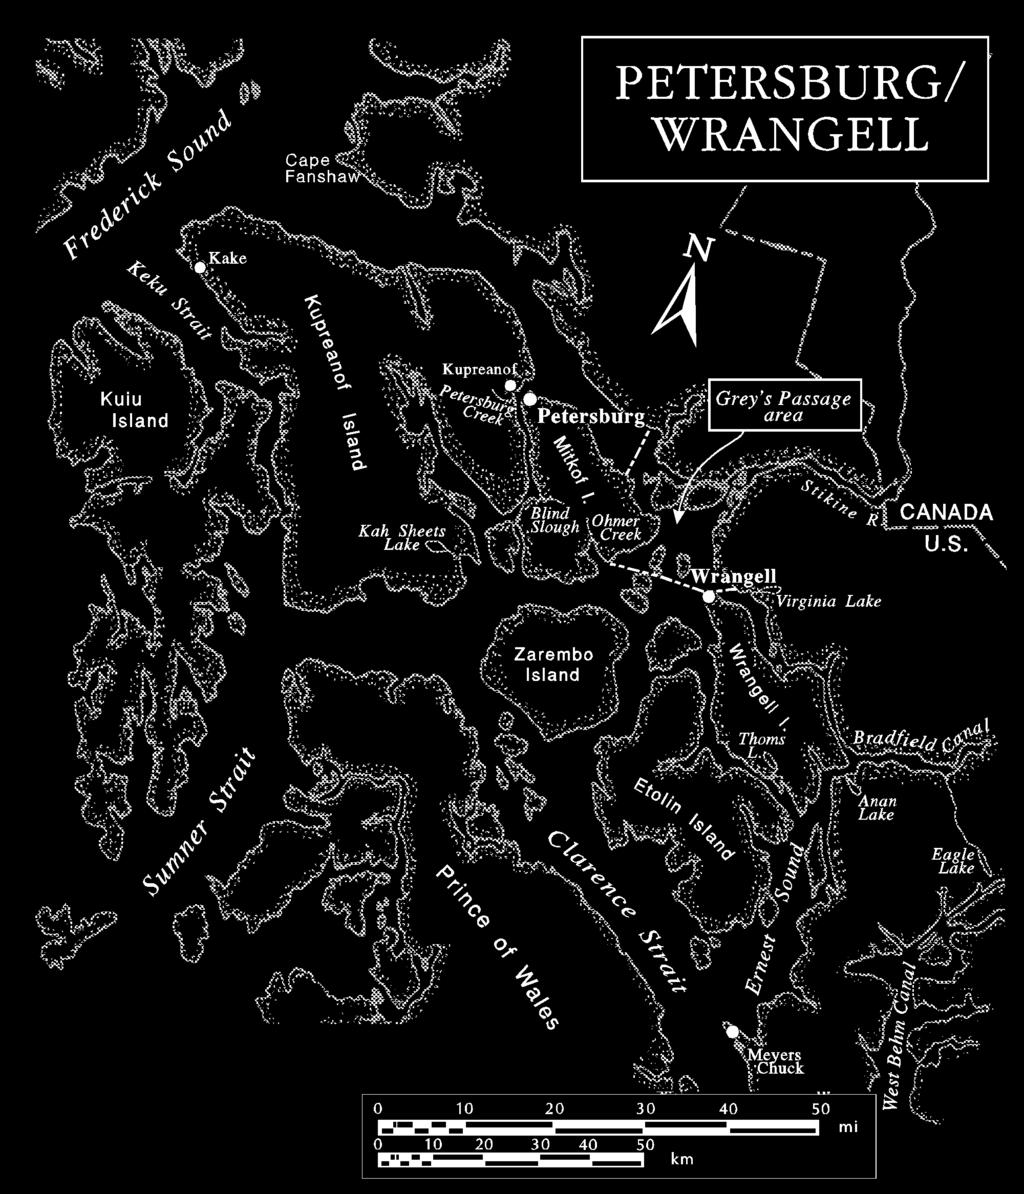 Figure 9. Petersburg/Wrangell management area.